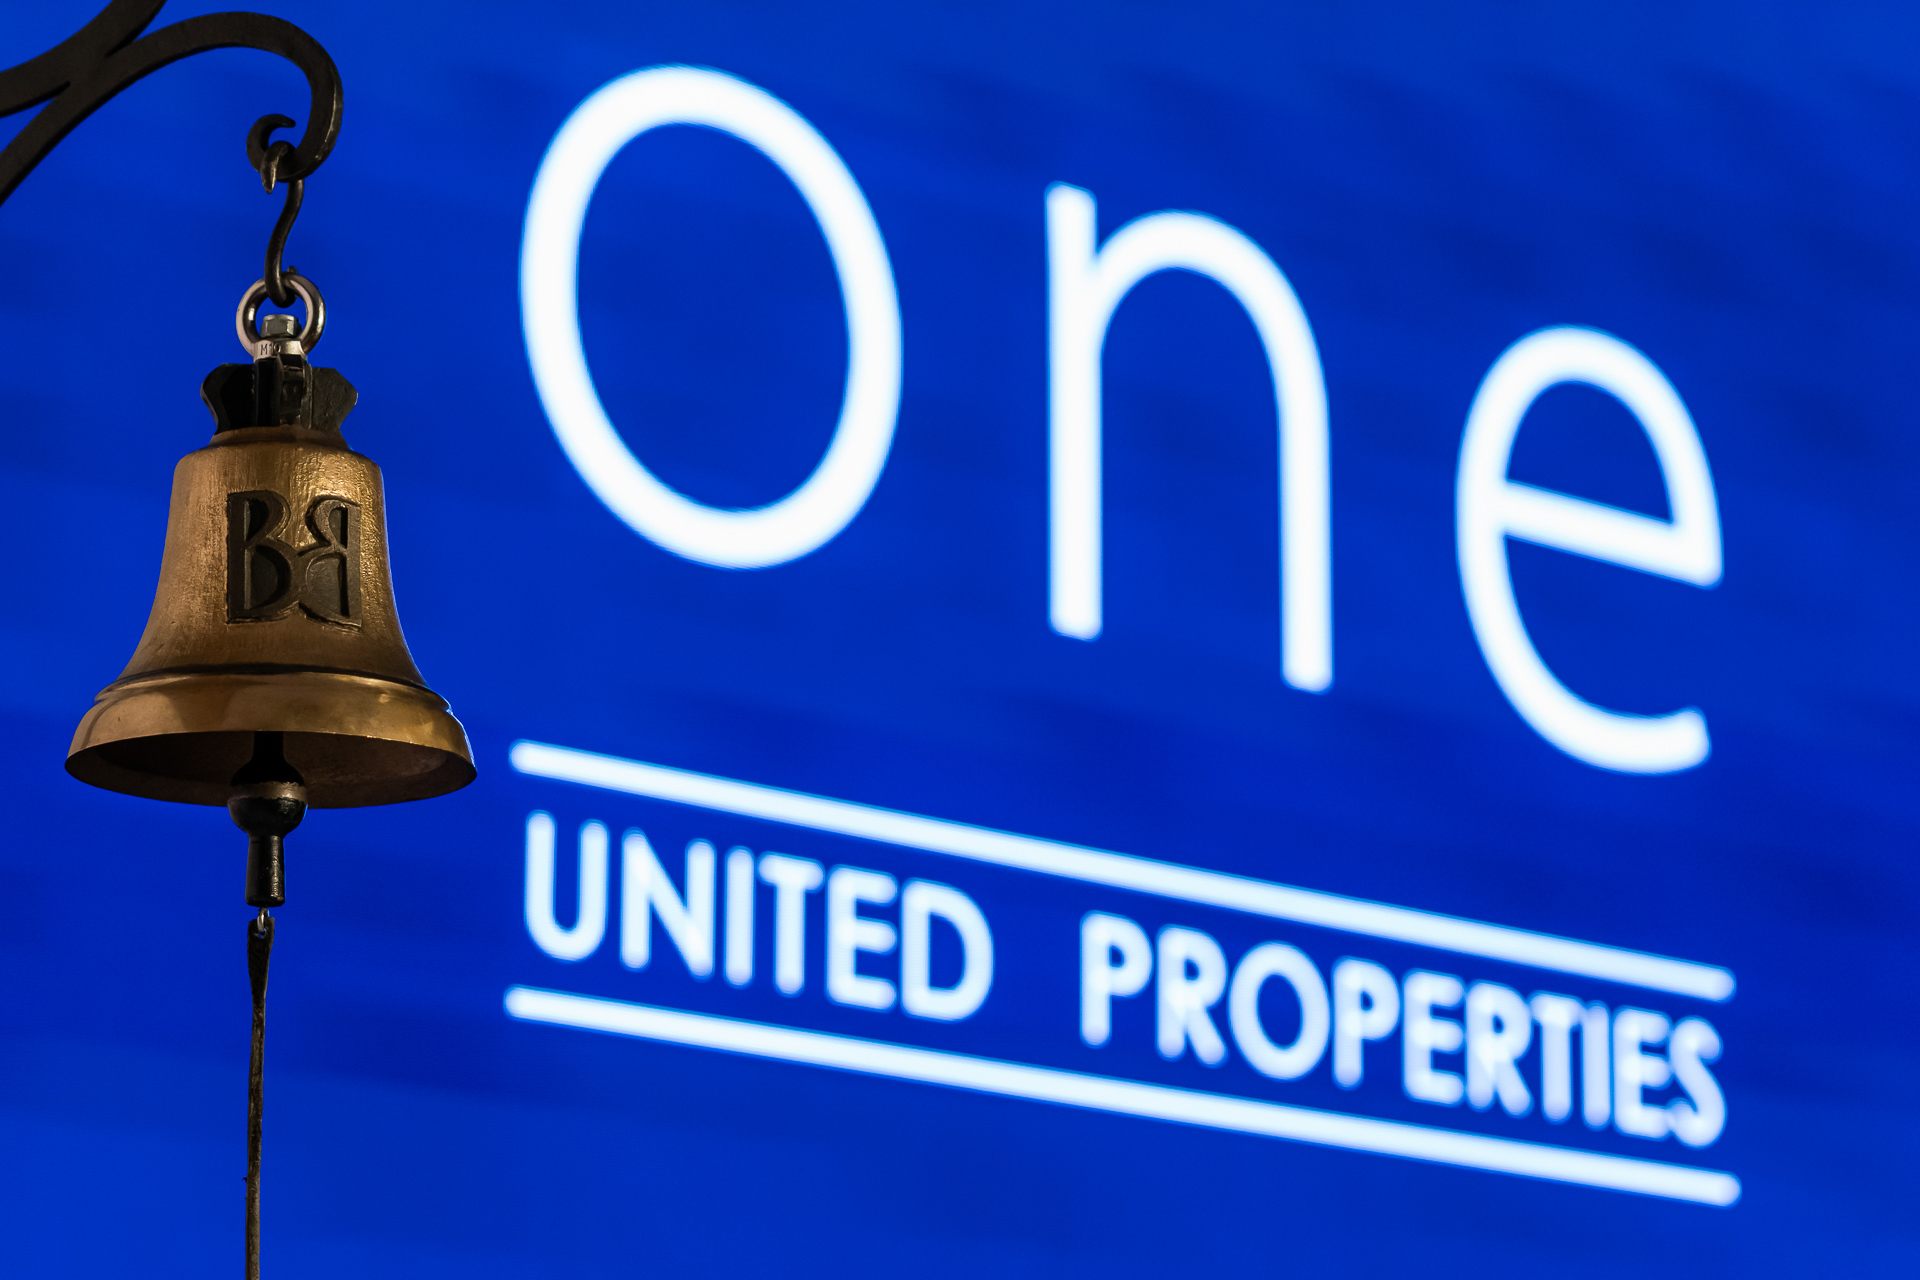 Acţionarii One United Properties au aprobat plata a 36,1 mil. lei în dividende şi distribuirea de acţiuni gratuite. În paralel, compania a decis ca mandatele membrilor Consiliului de Administraţie să fie de un an